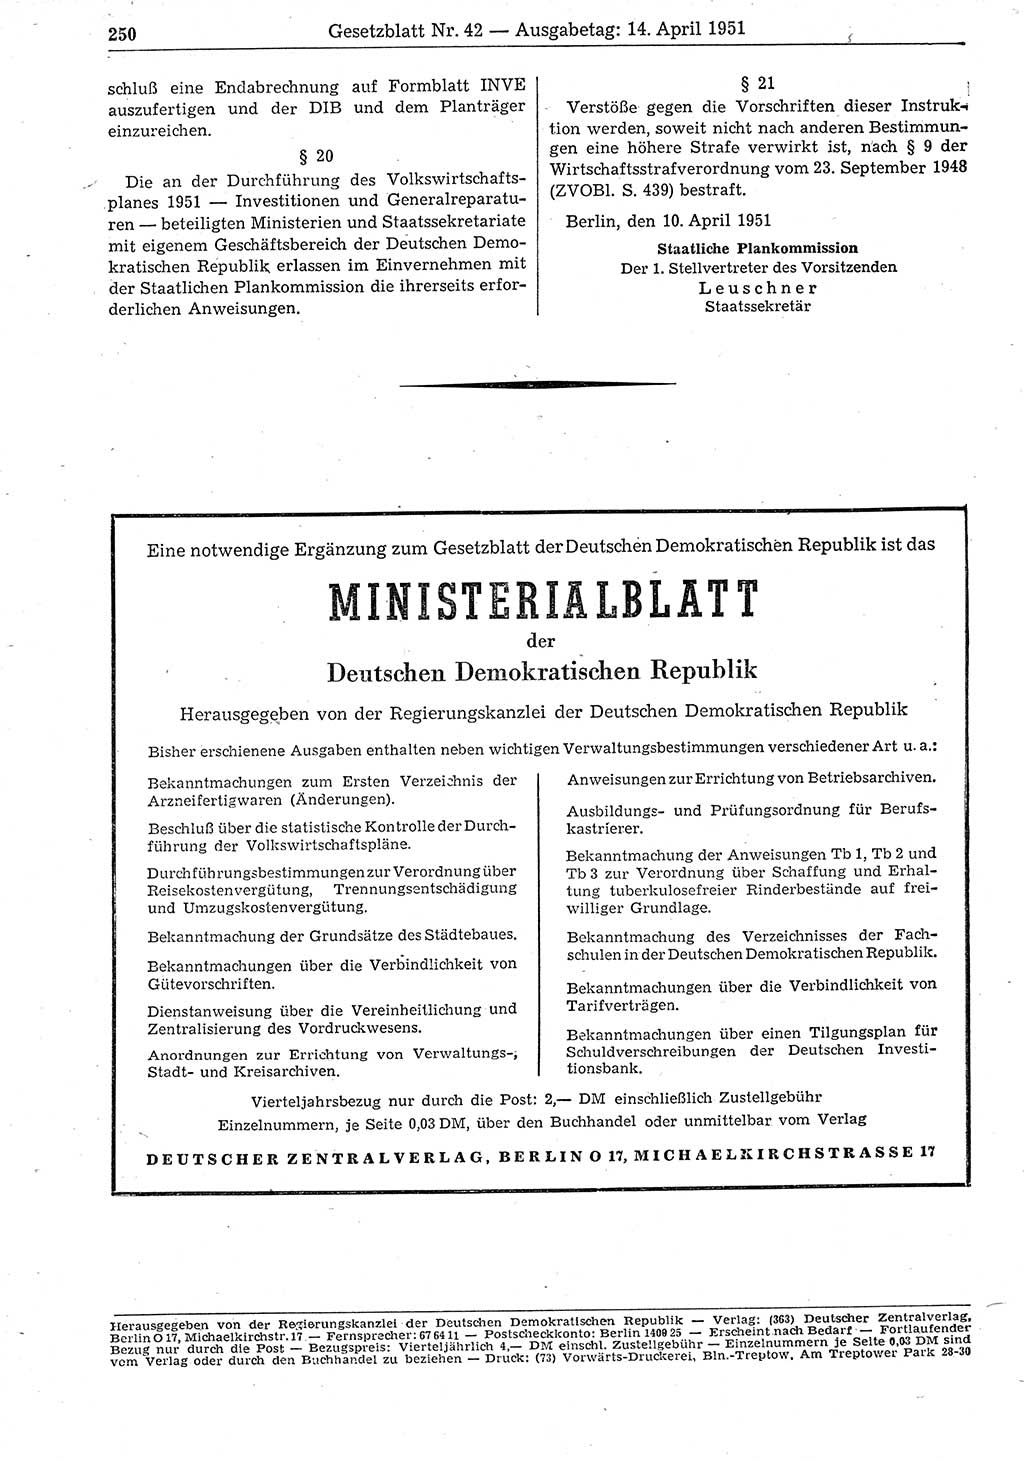 Gesetzblatt (GBl.) der Deutschen Demokratischen Republik (DDR) 1951, Seite 250 (GBl. DDR 1951, S. 250)